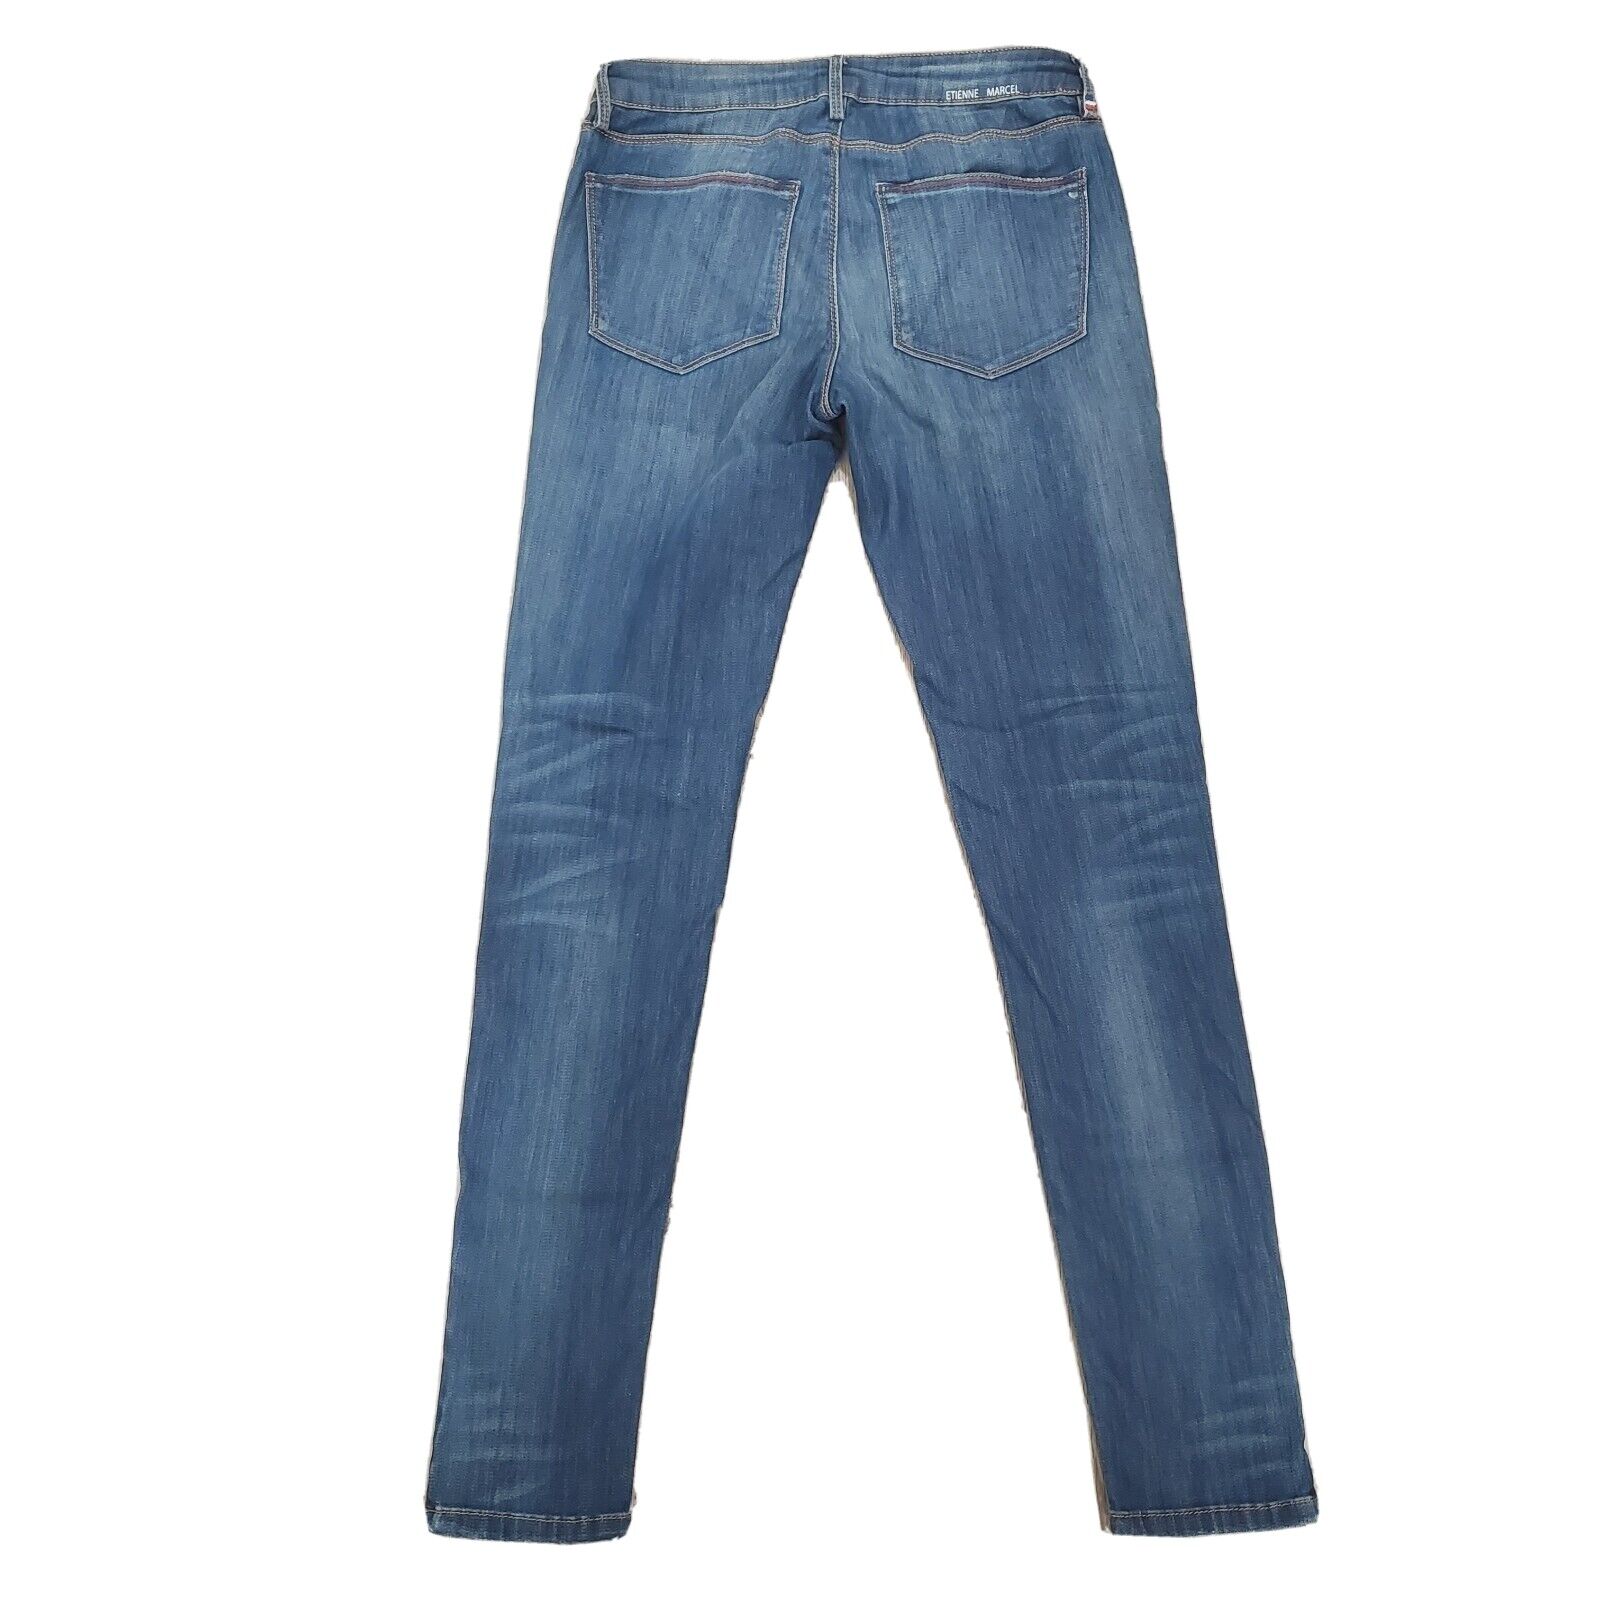 Etienne Marcel Signature Ankle Zip Blue Jeans Siz… - image 2